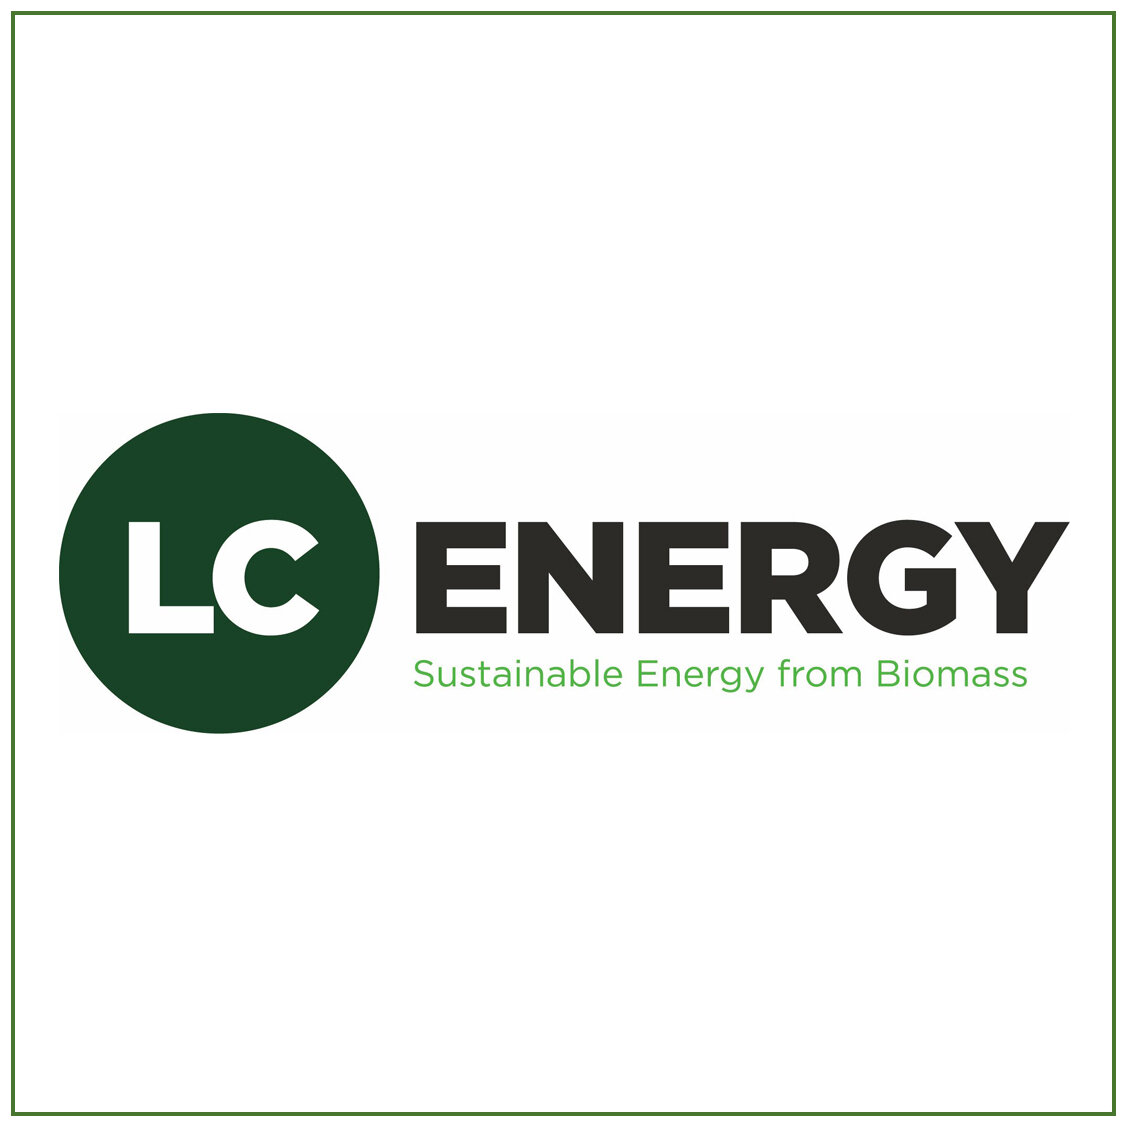 LC energy.jpg